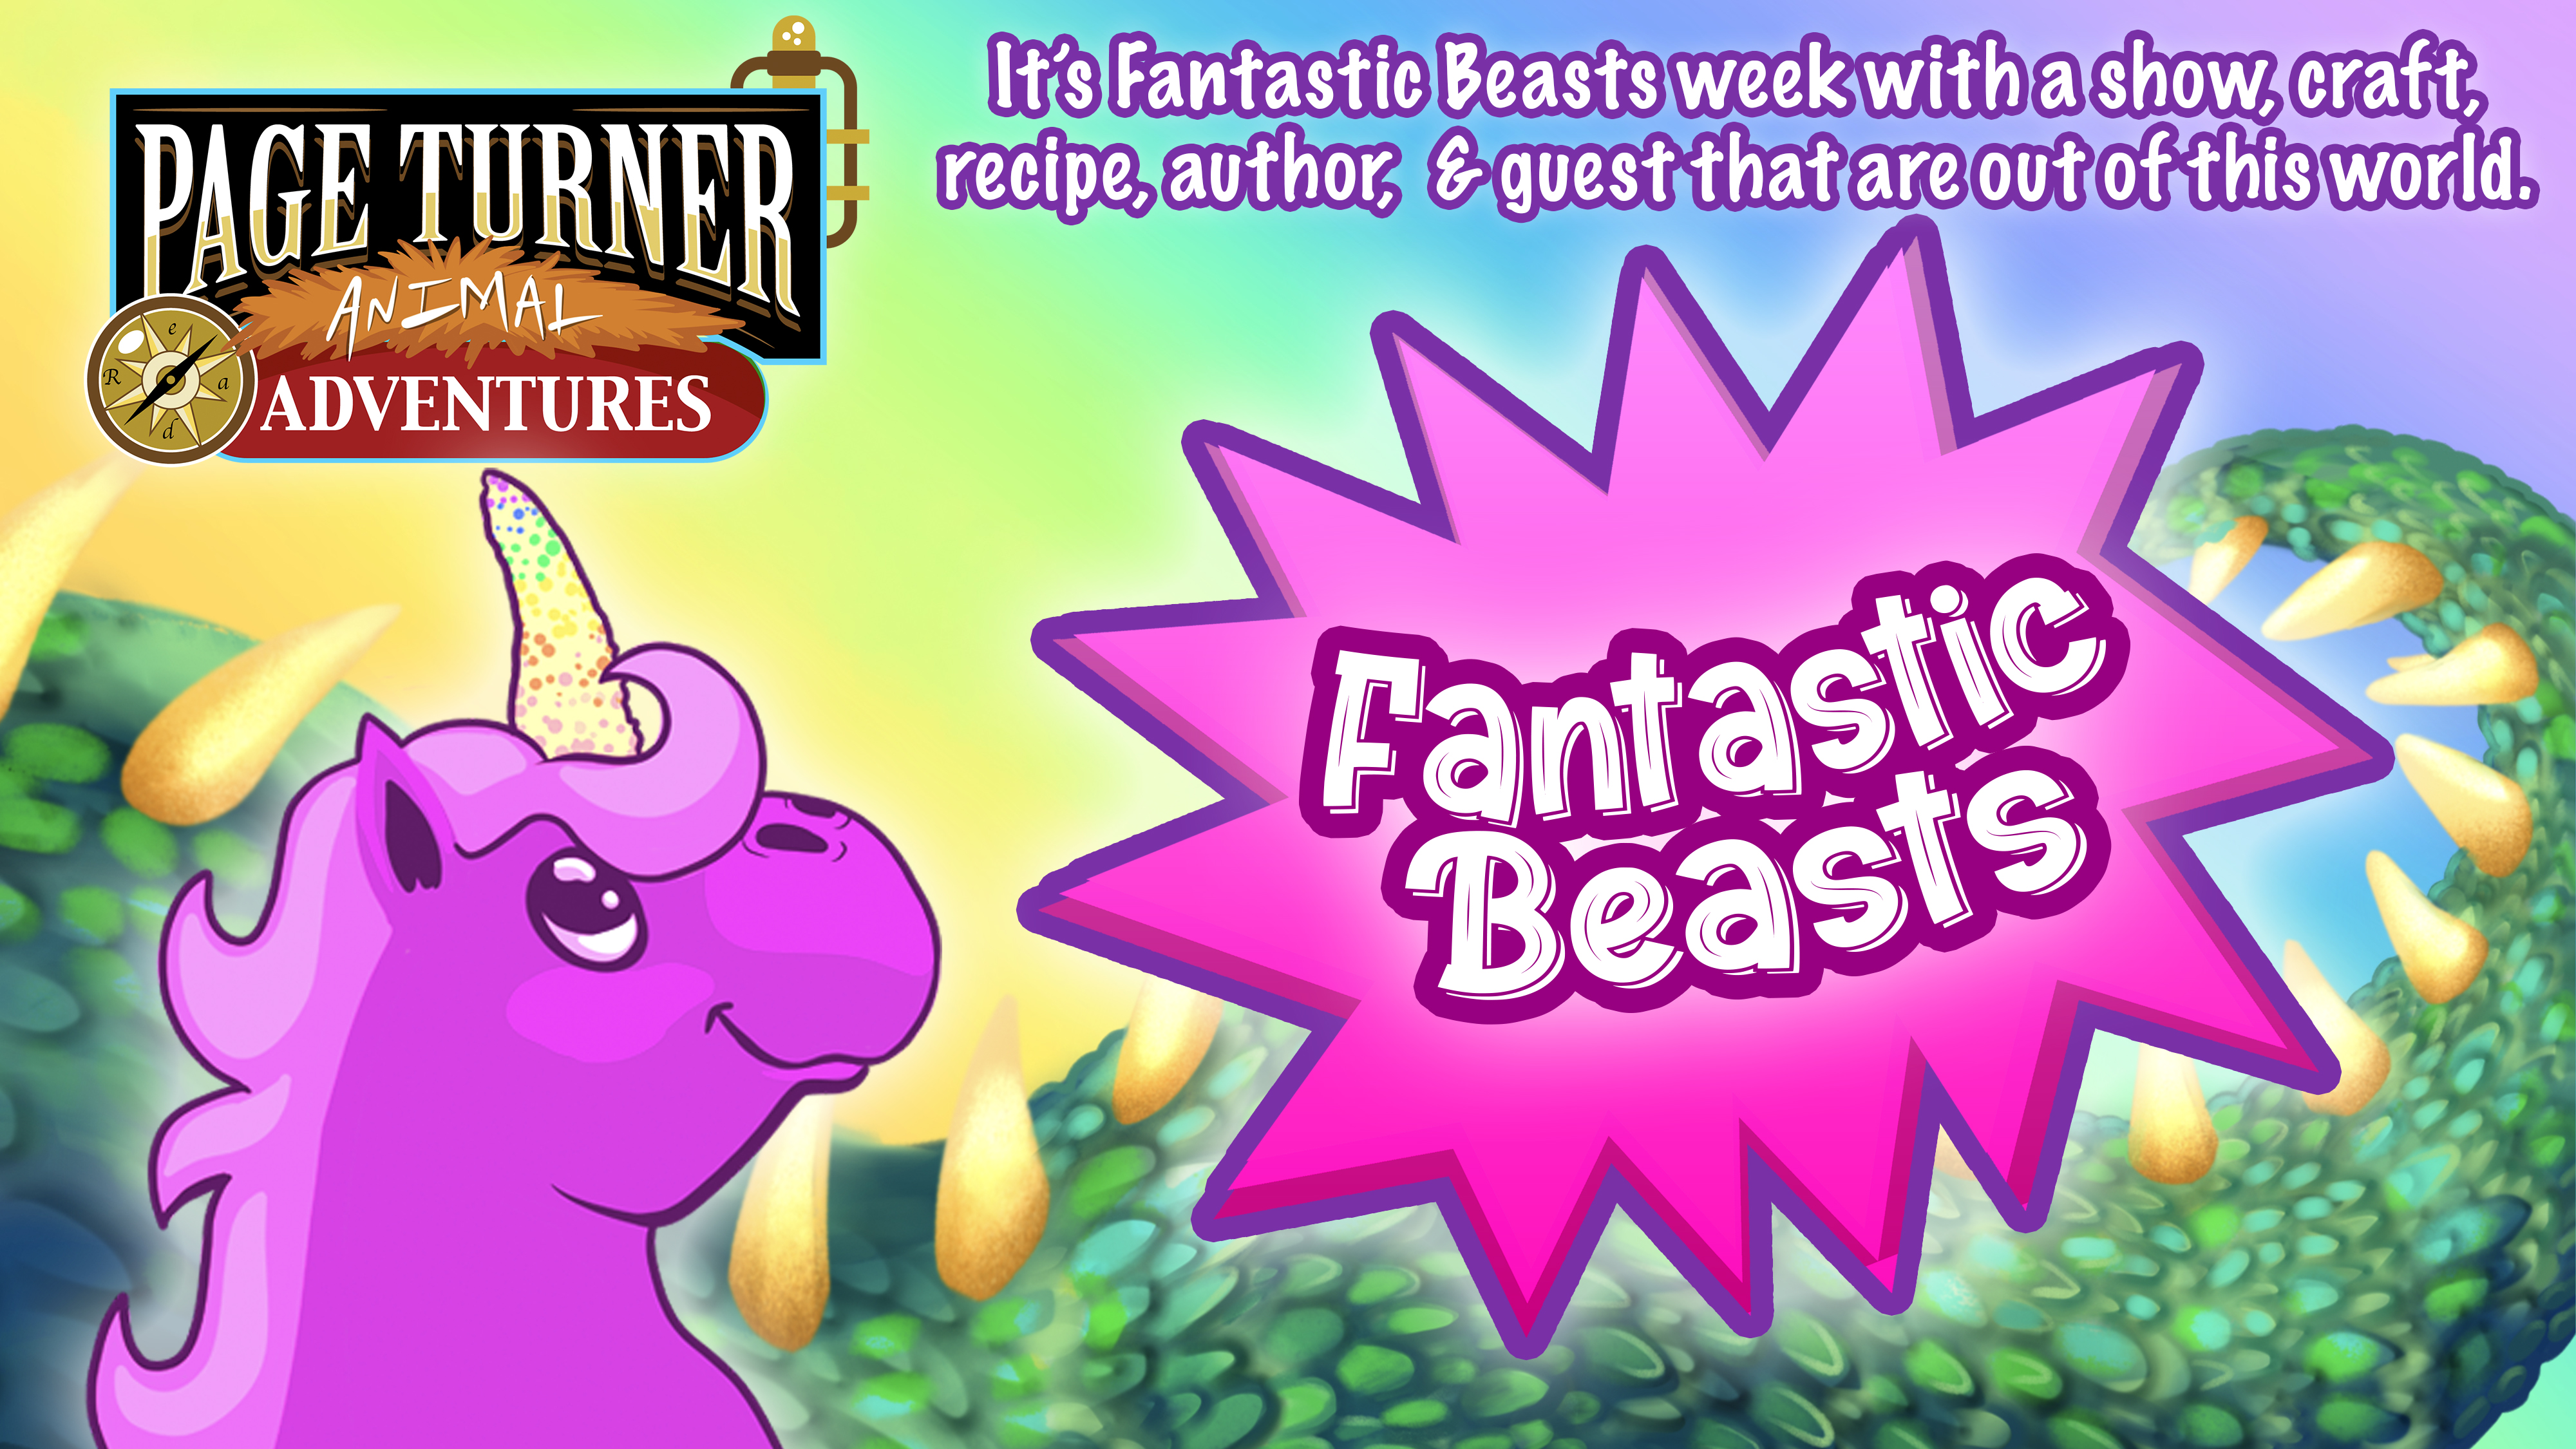 Fantastic Beasts week